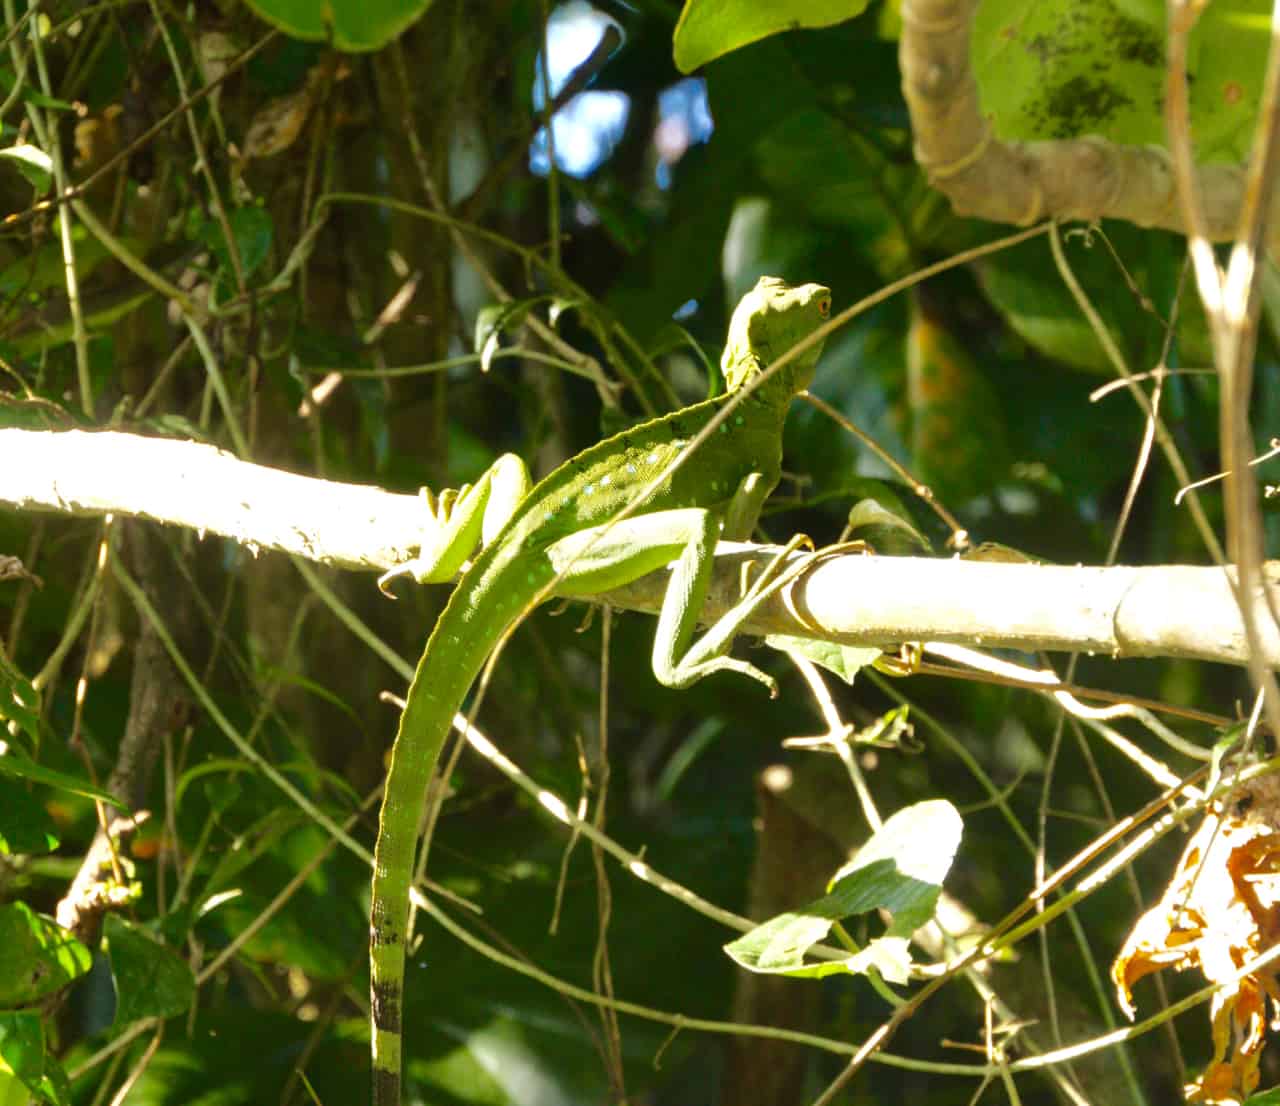  en kvinnelig grønn basilisk hviler på En gren I Tortuguero, En Av De mest biodiverse parkene I Costa Rica.